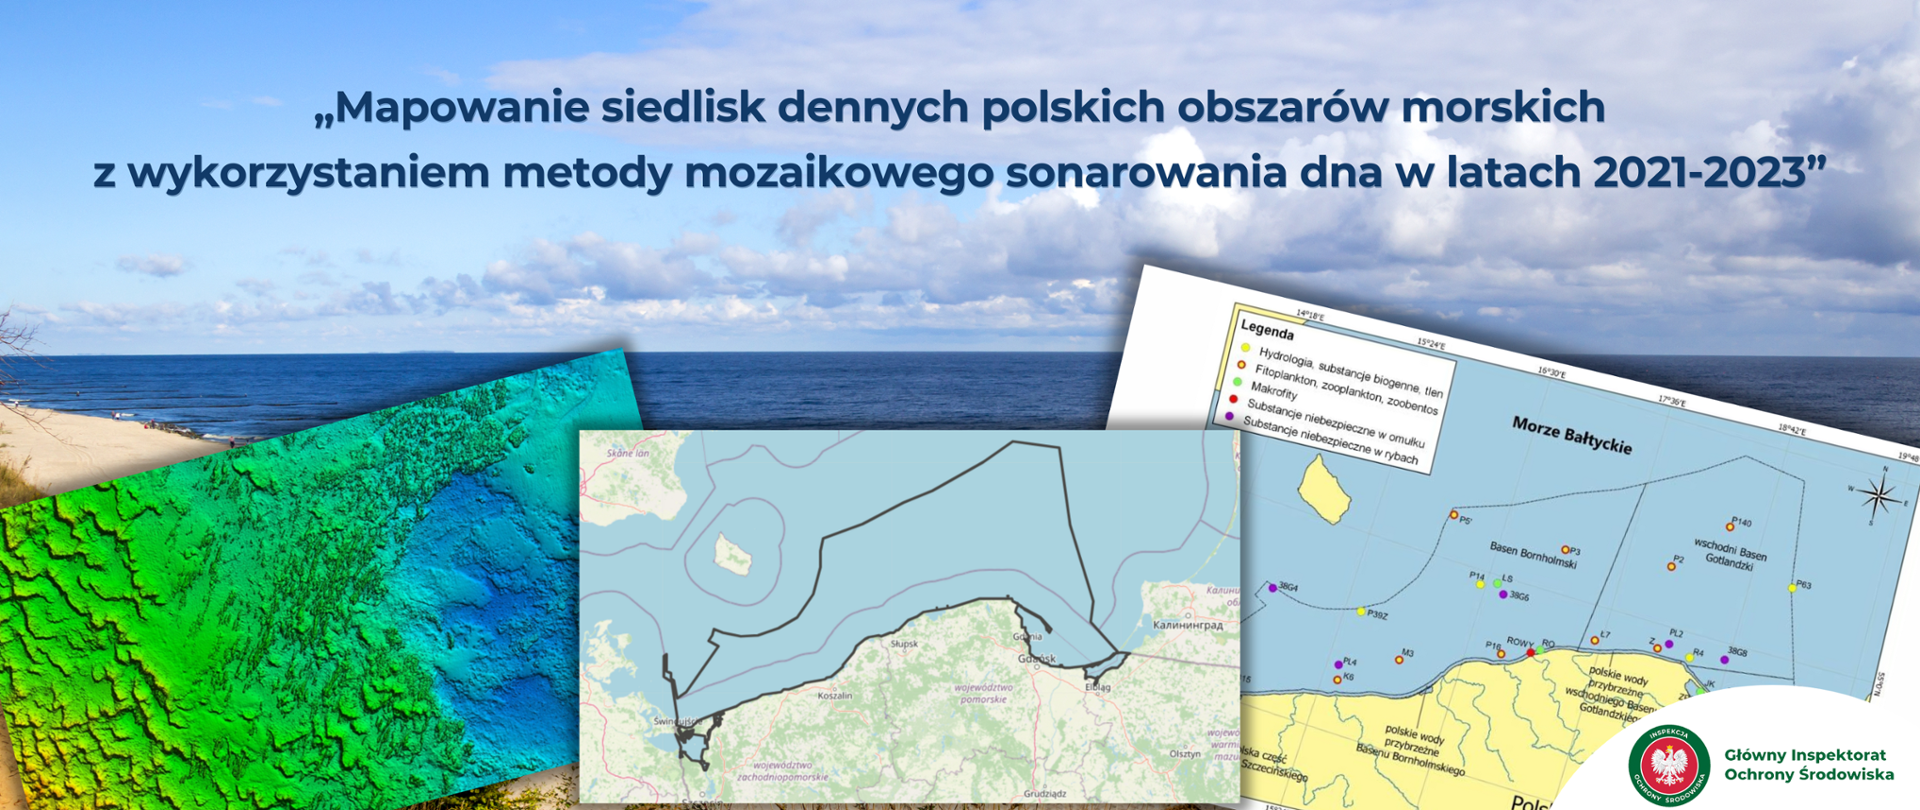 Mapowanie siedlisk dennych polskich obszarów morskich z wykorzystaniem metody mozaikowego sonarowania dna w latach 2021-2023